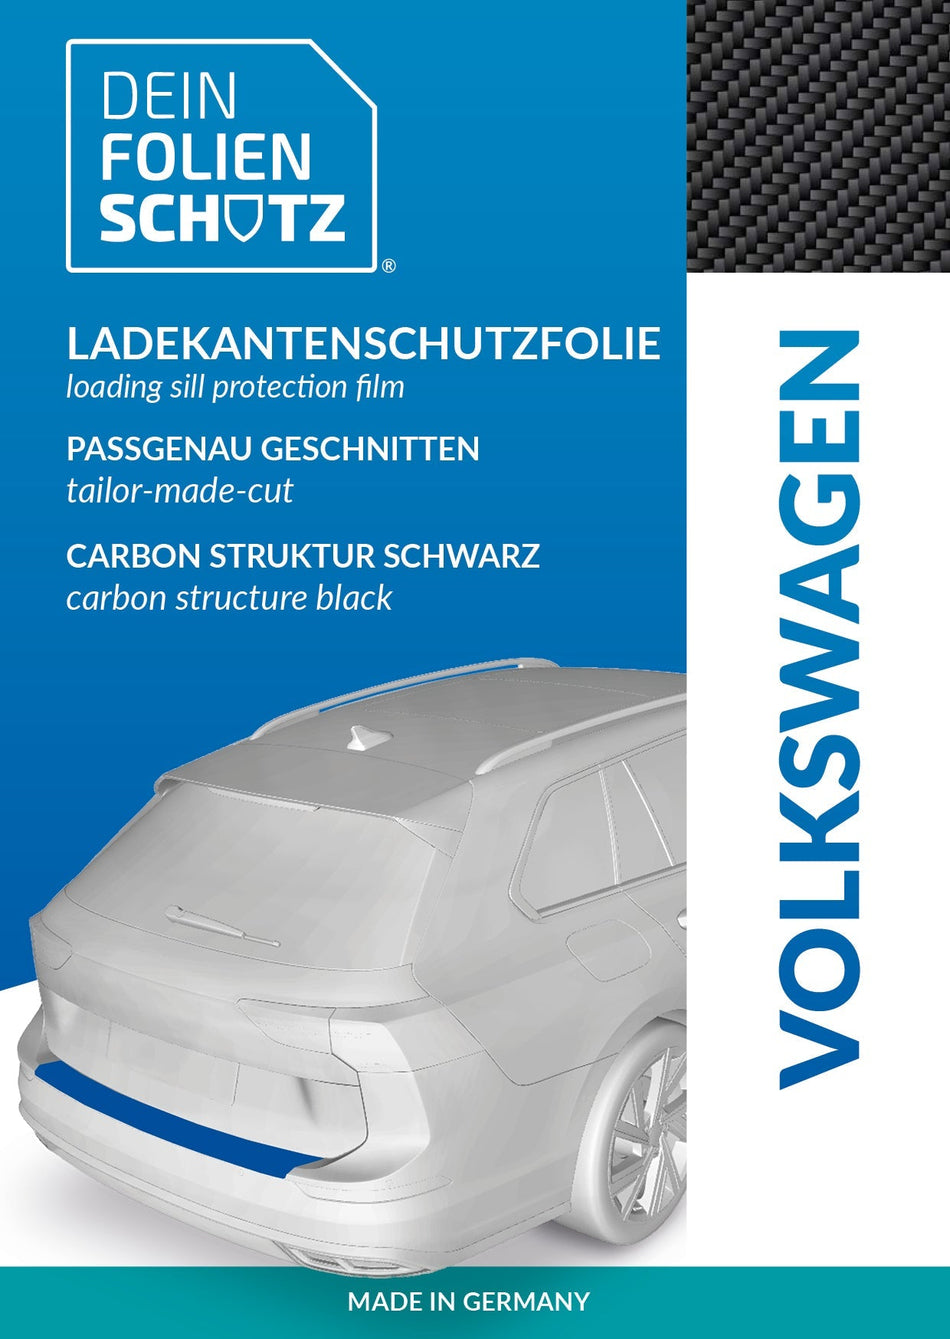 DEIN FOLIENSCHUTZ Ladekantenschutzfolie Volkswagen T6 Carbon Struktur schwarz